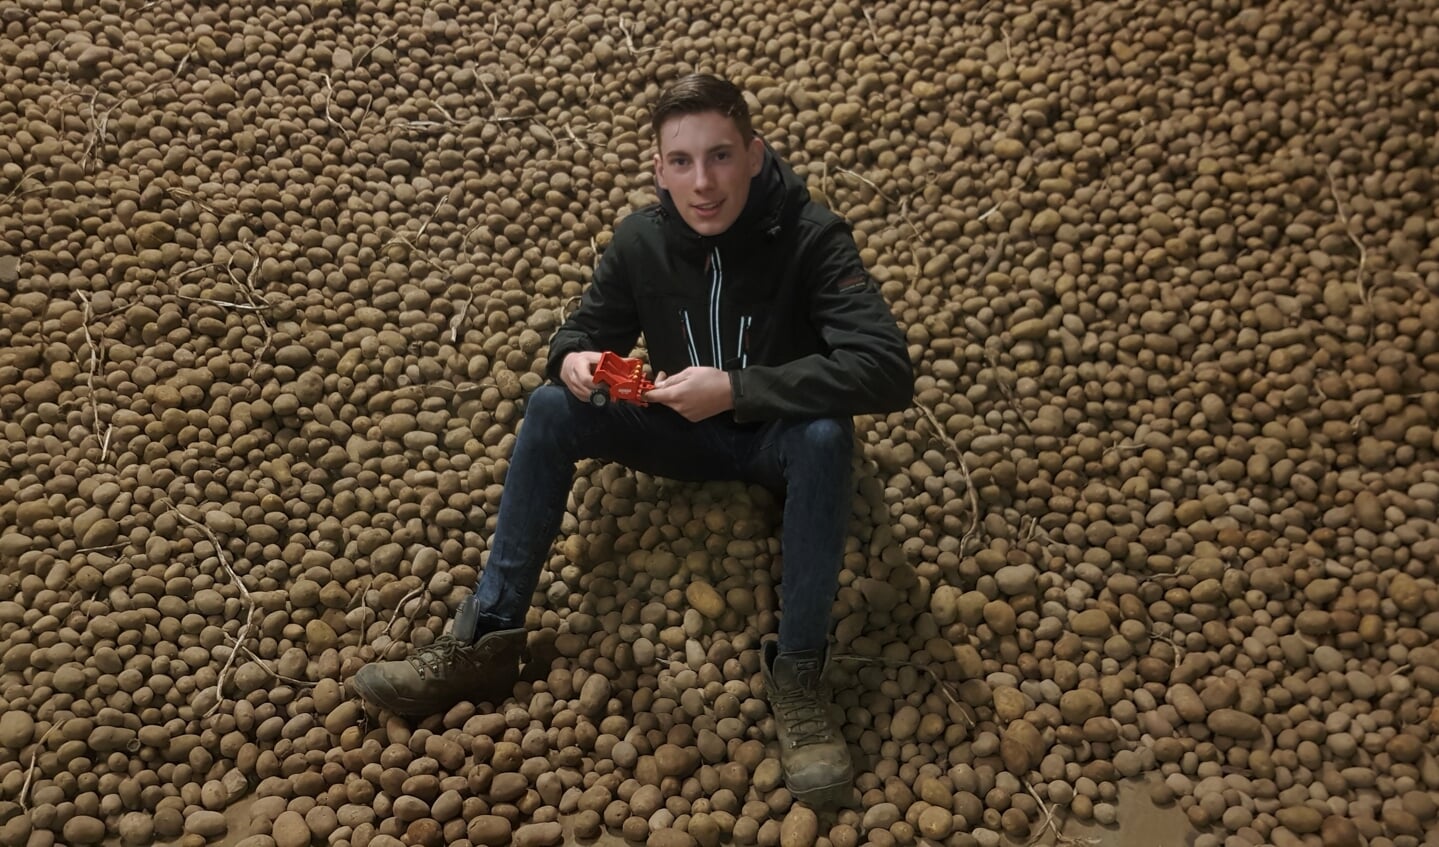 Bas Beuwer bouwde een aardappelpoter in het computerspel Farming Simulator. Als kind speelde hij met een schaalmodel. Foto: Alice Rouwhorst